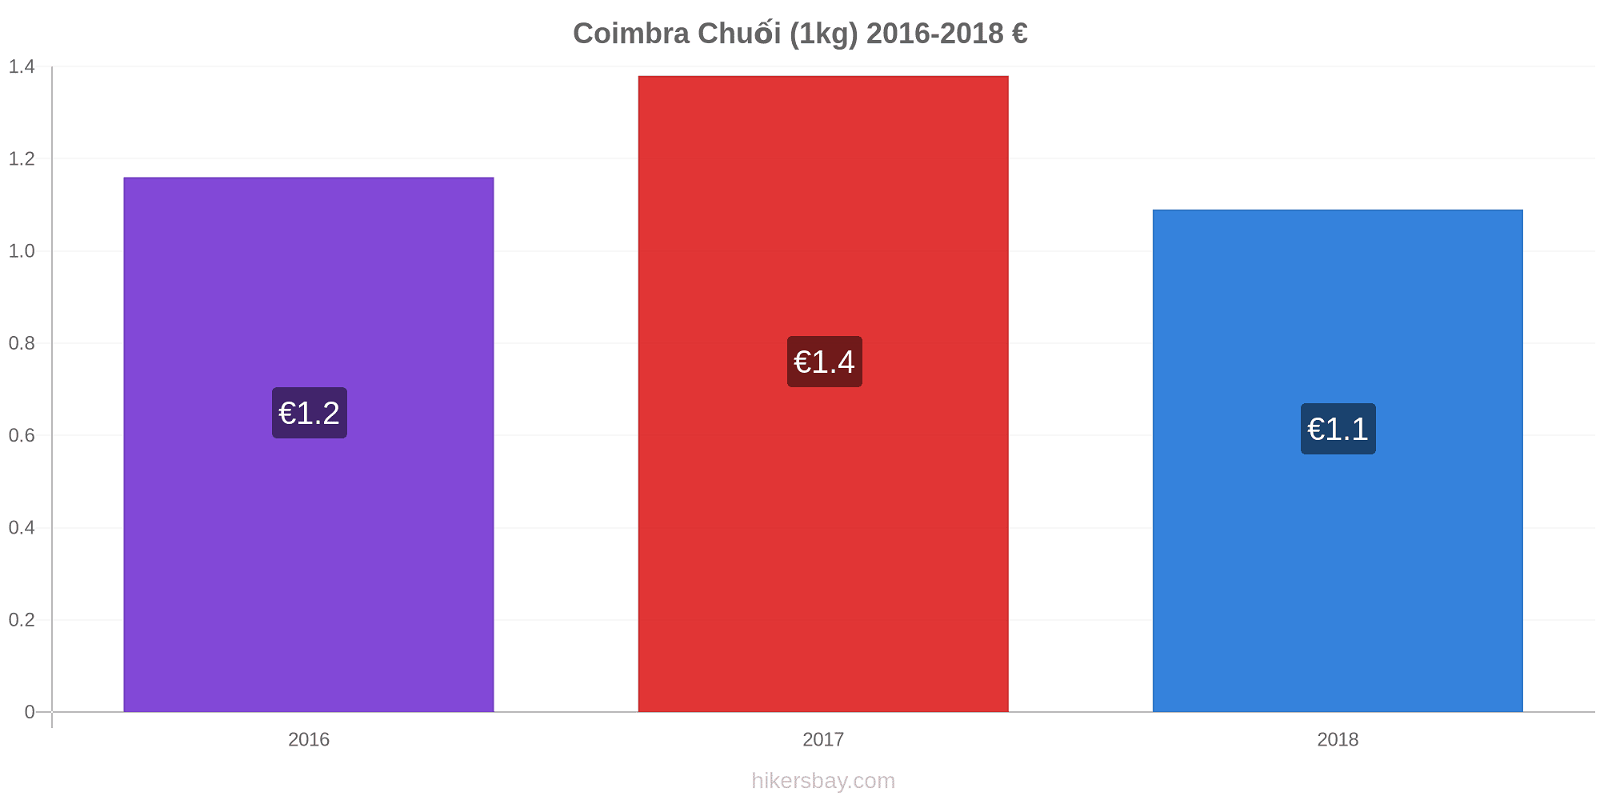 Coimbra thay đổi giá Chuối (1kg) hikersbay.com